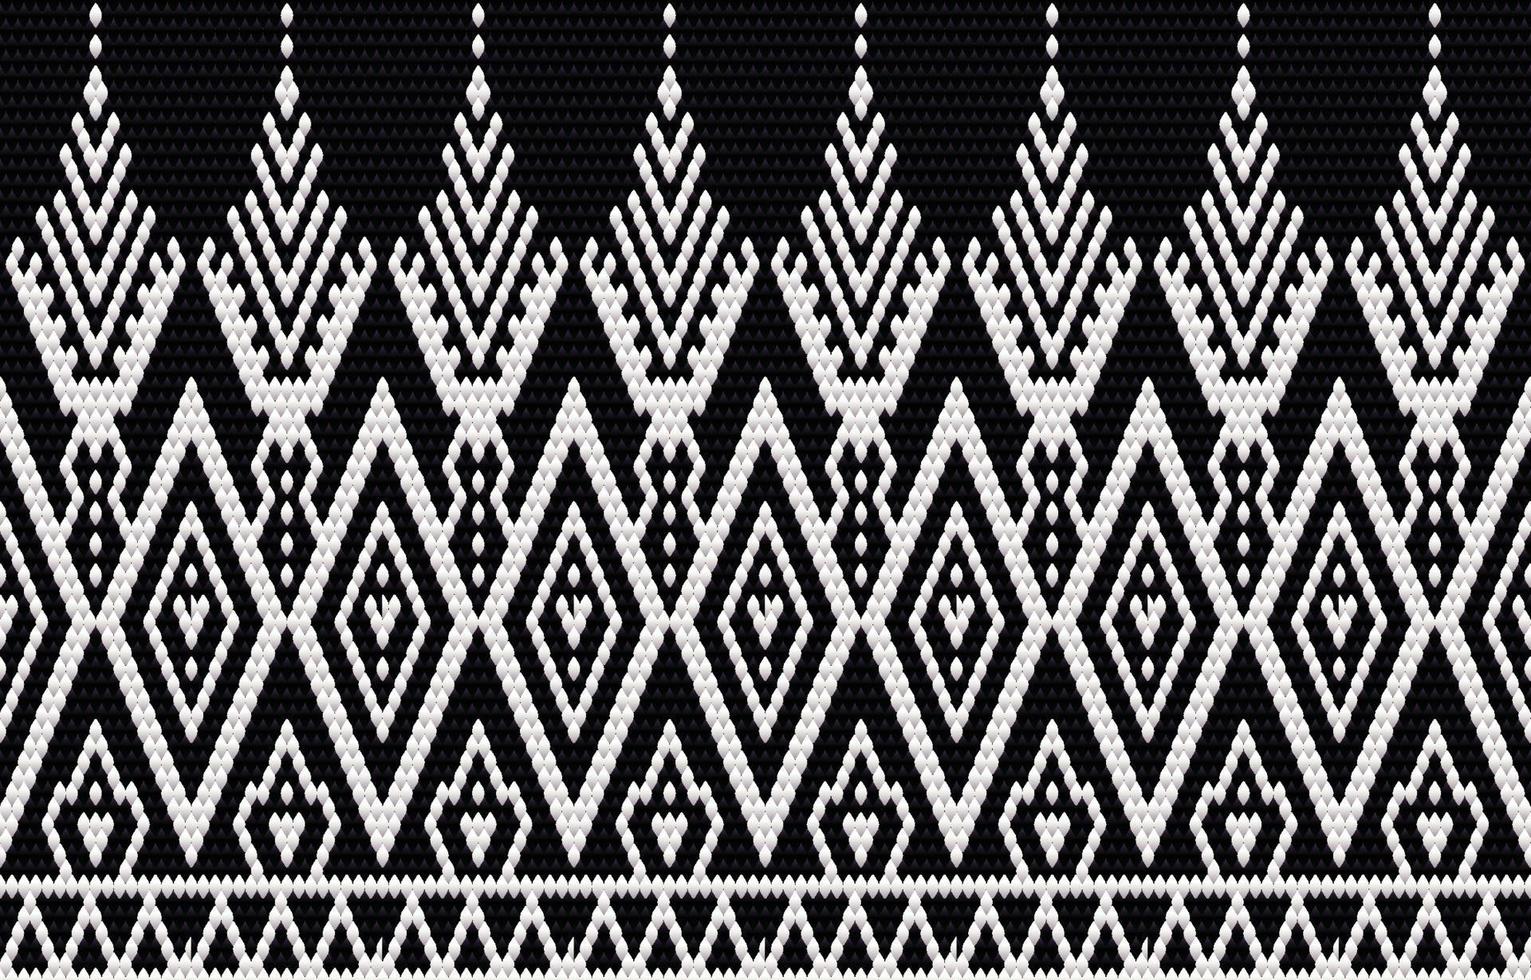 bordado de patrón étnico geométrico y diseño tradicional. textura de vector étnico tribal. diseño para alfombra, papel tapiz, ropa, envoltura, batik, tela en estilo bordado en temas étnicos.